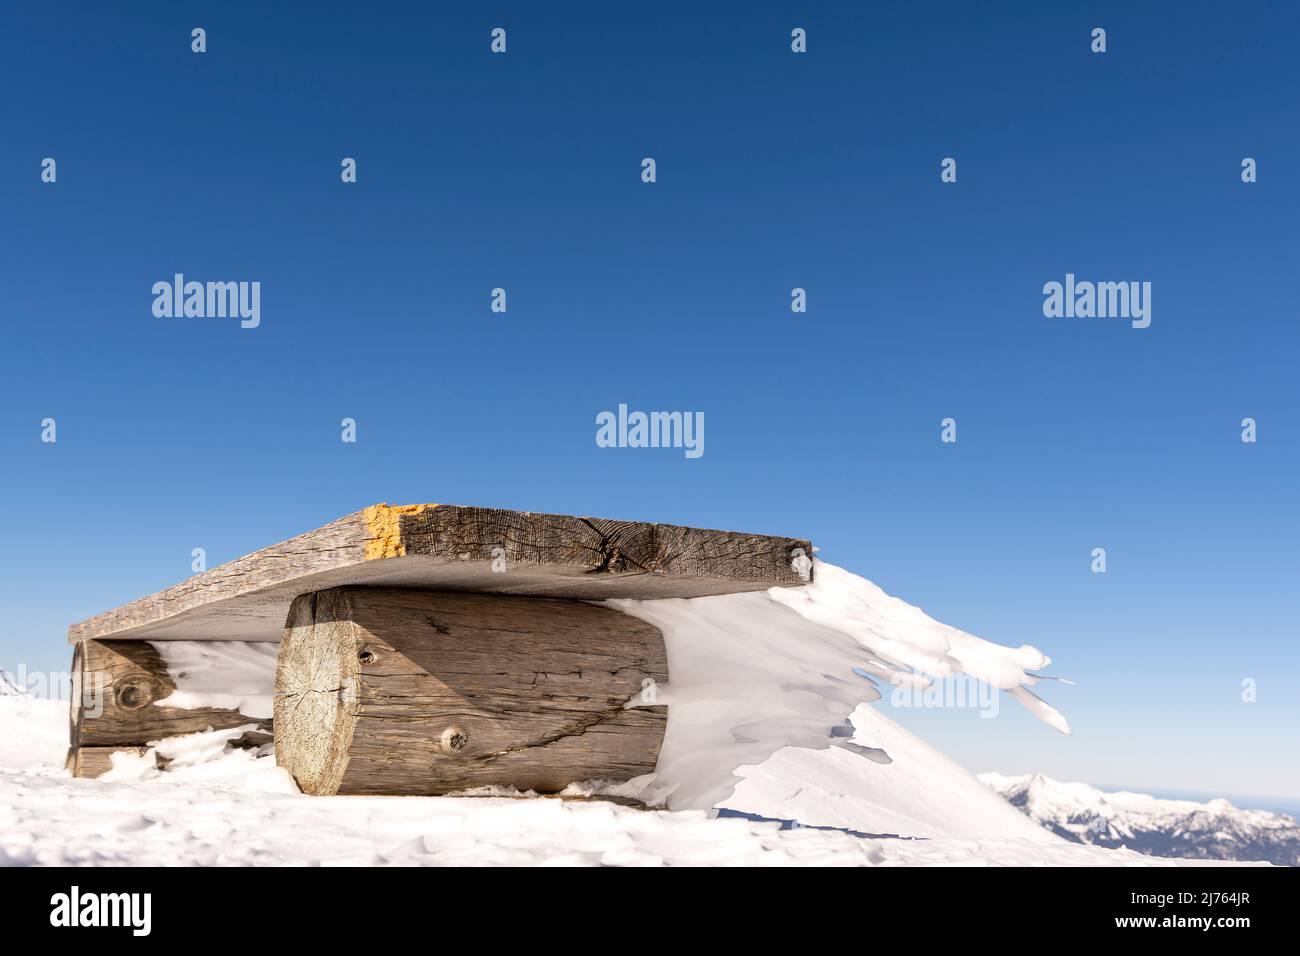 Eine Bank an der Bergstation der Karwendelbahn am Westkarwendel, in Schnee und Eis, mit bizarren Eiszapfen, die horizontal vom Sitz weg gehen. Stockfoto